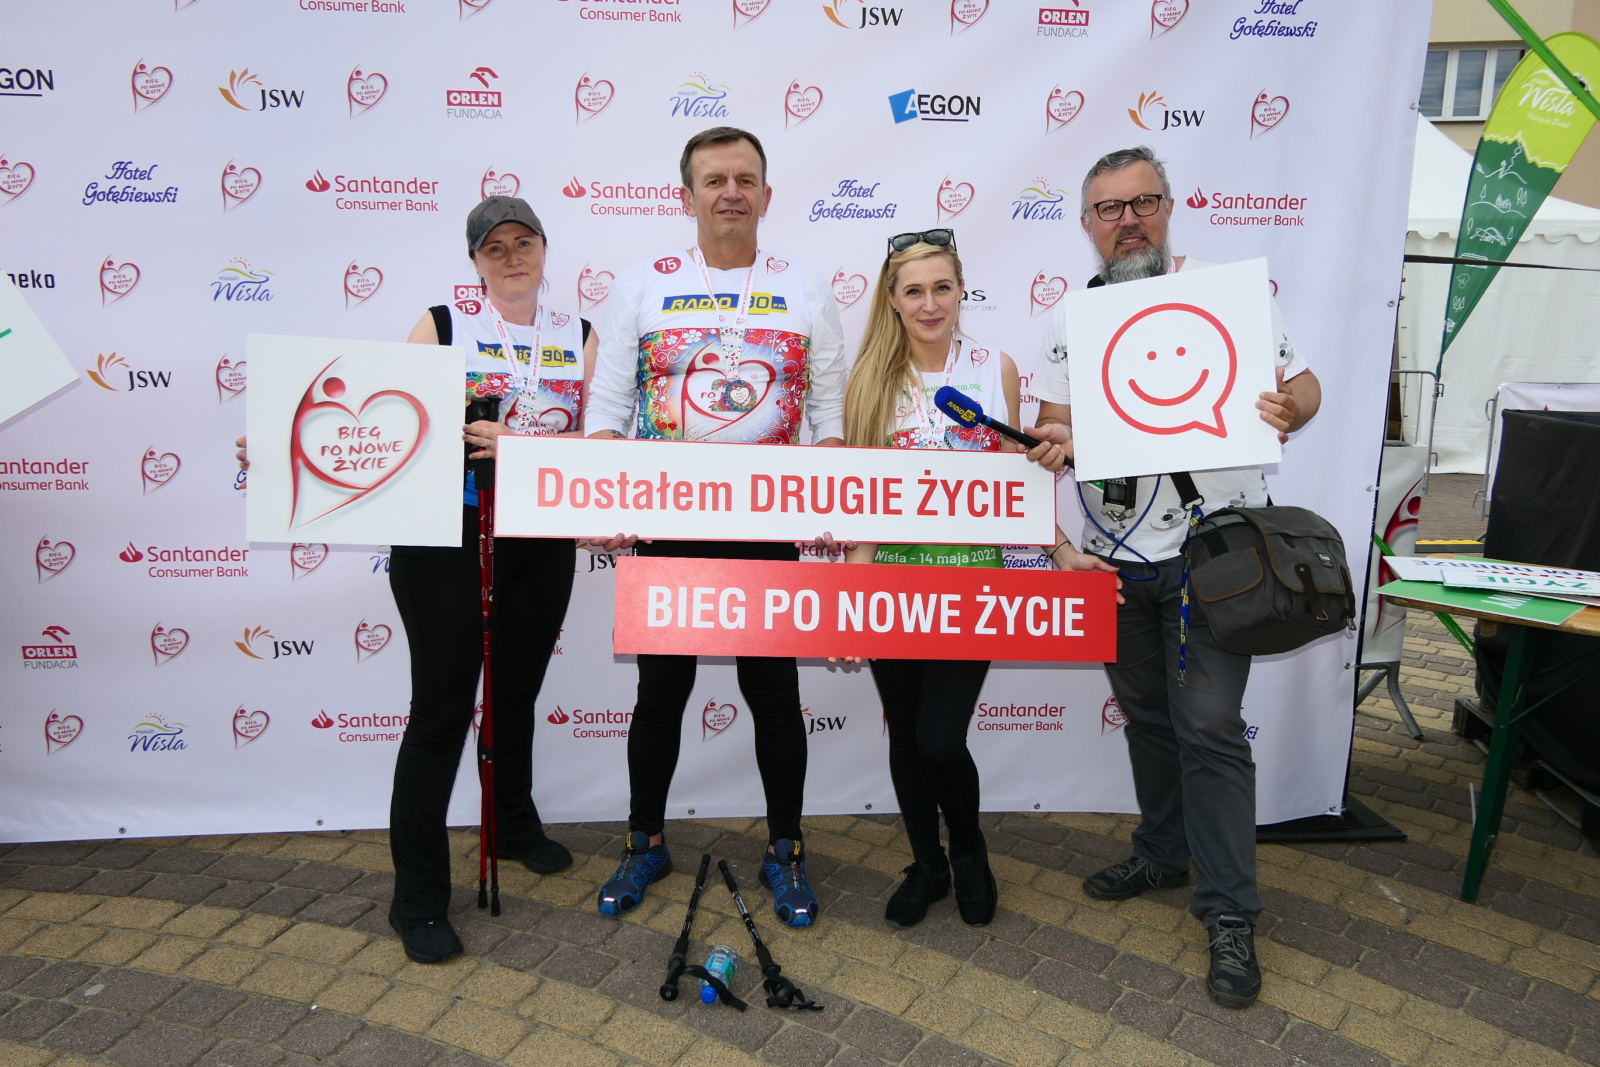 Bieg po Nowe Życie. Wielka impreza promująca transplantologię znów w Wiśle